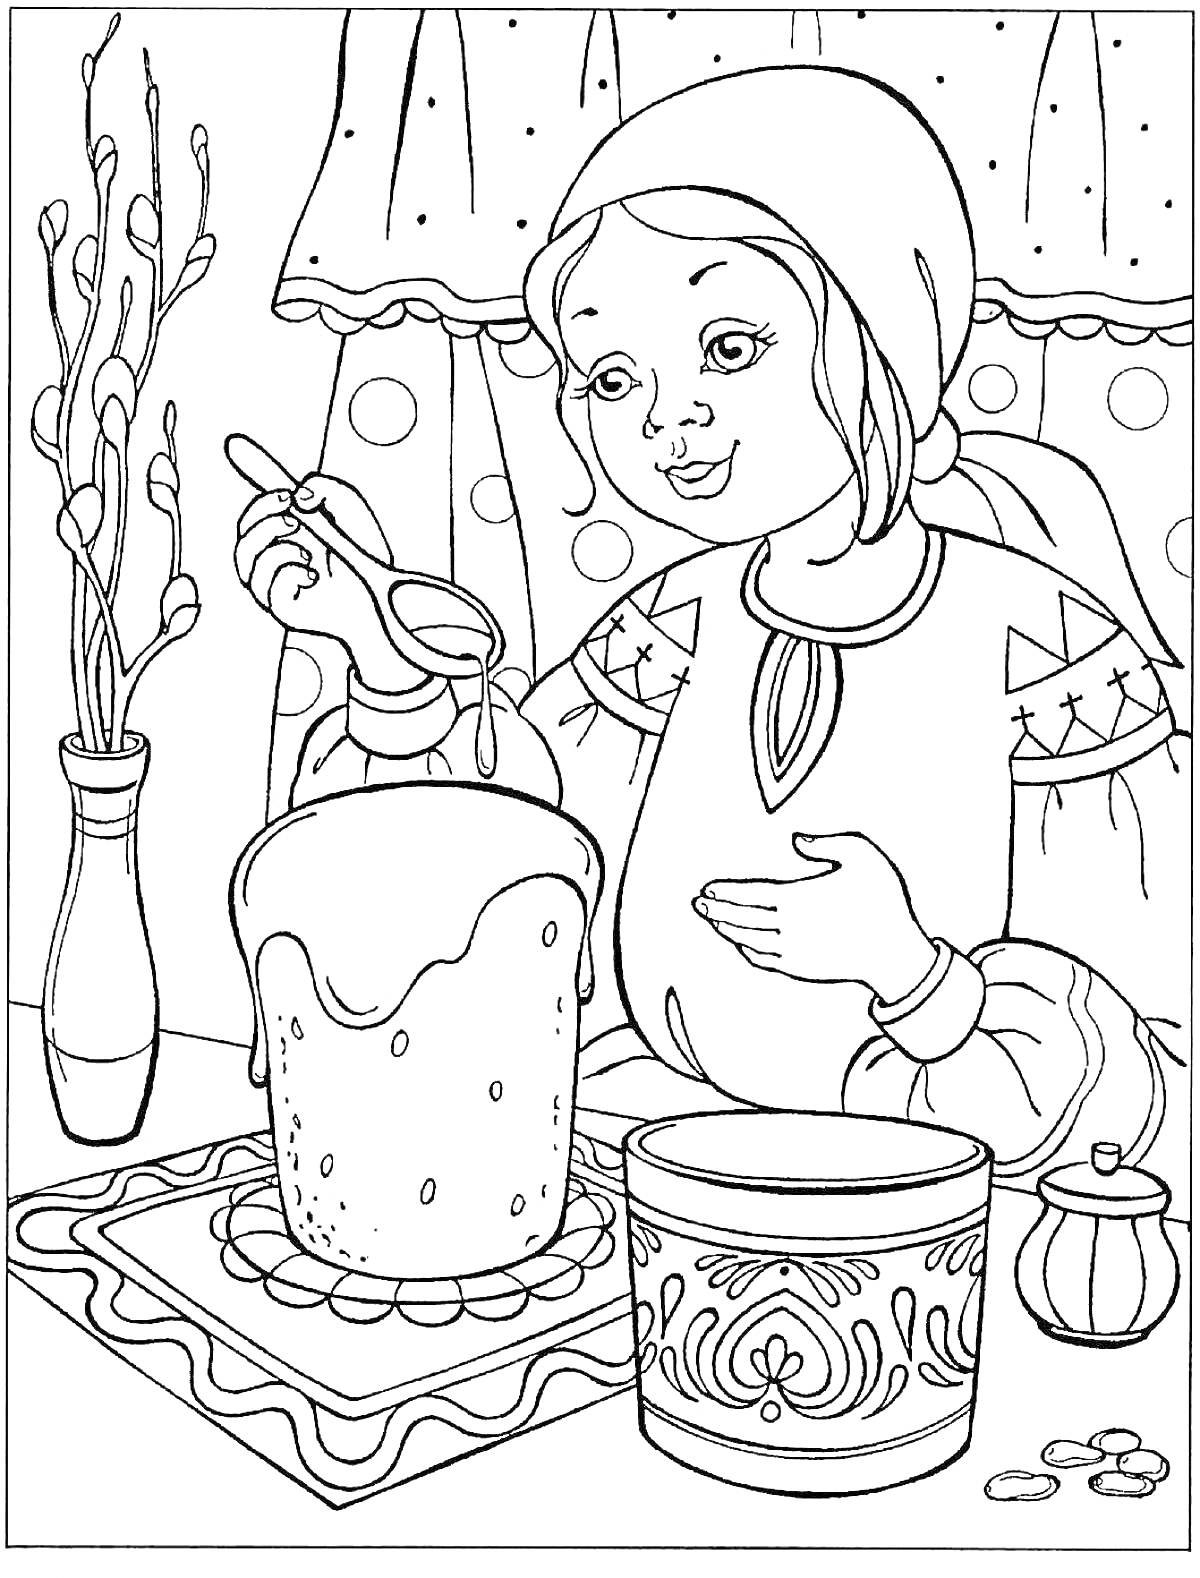 Девочка украшает кулич в доме на Пасху, ваза с вербой, расписанная банка и солонка